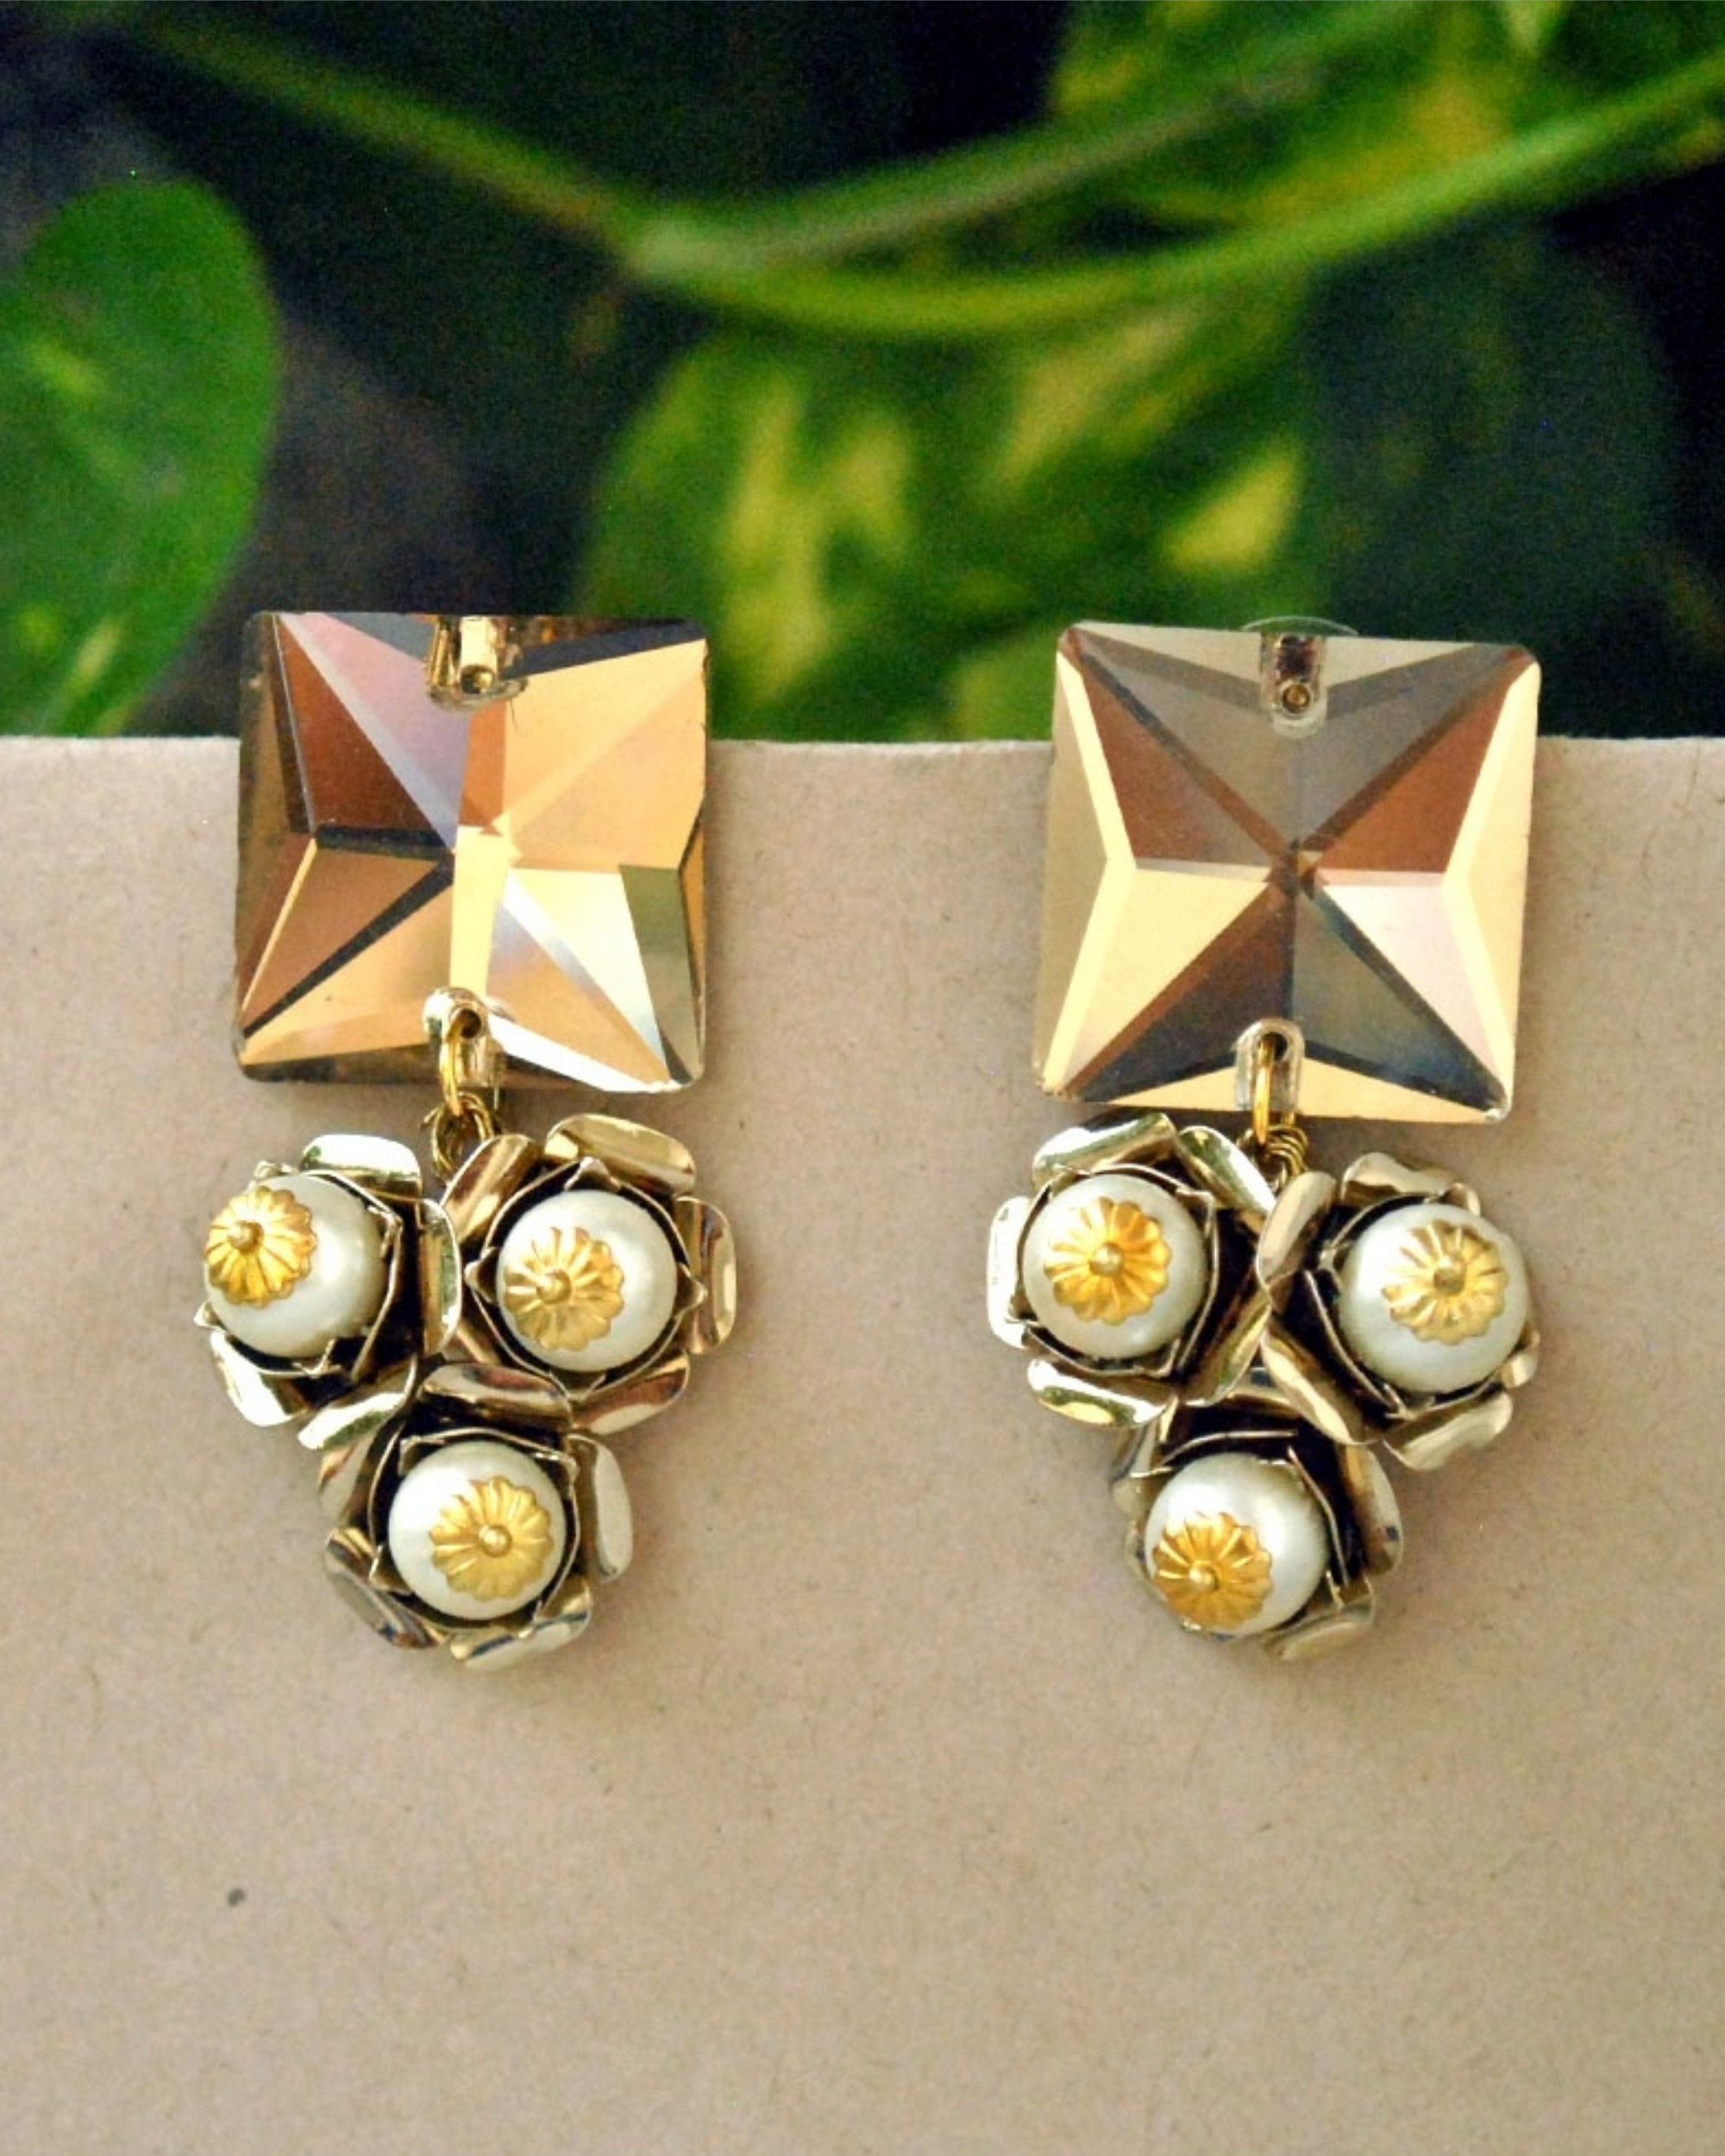 Flower trio earrings